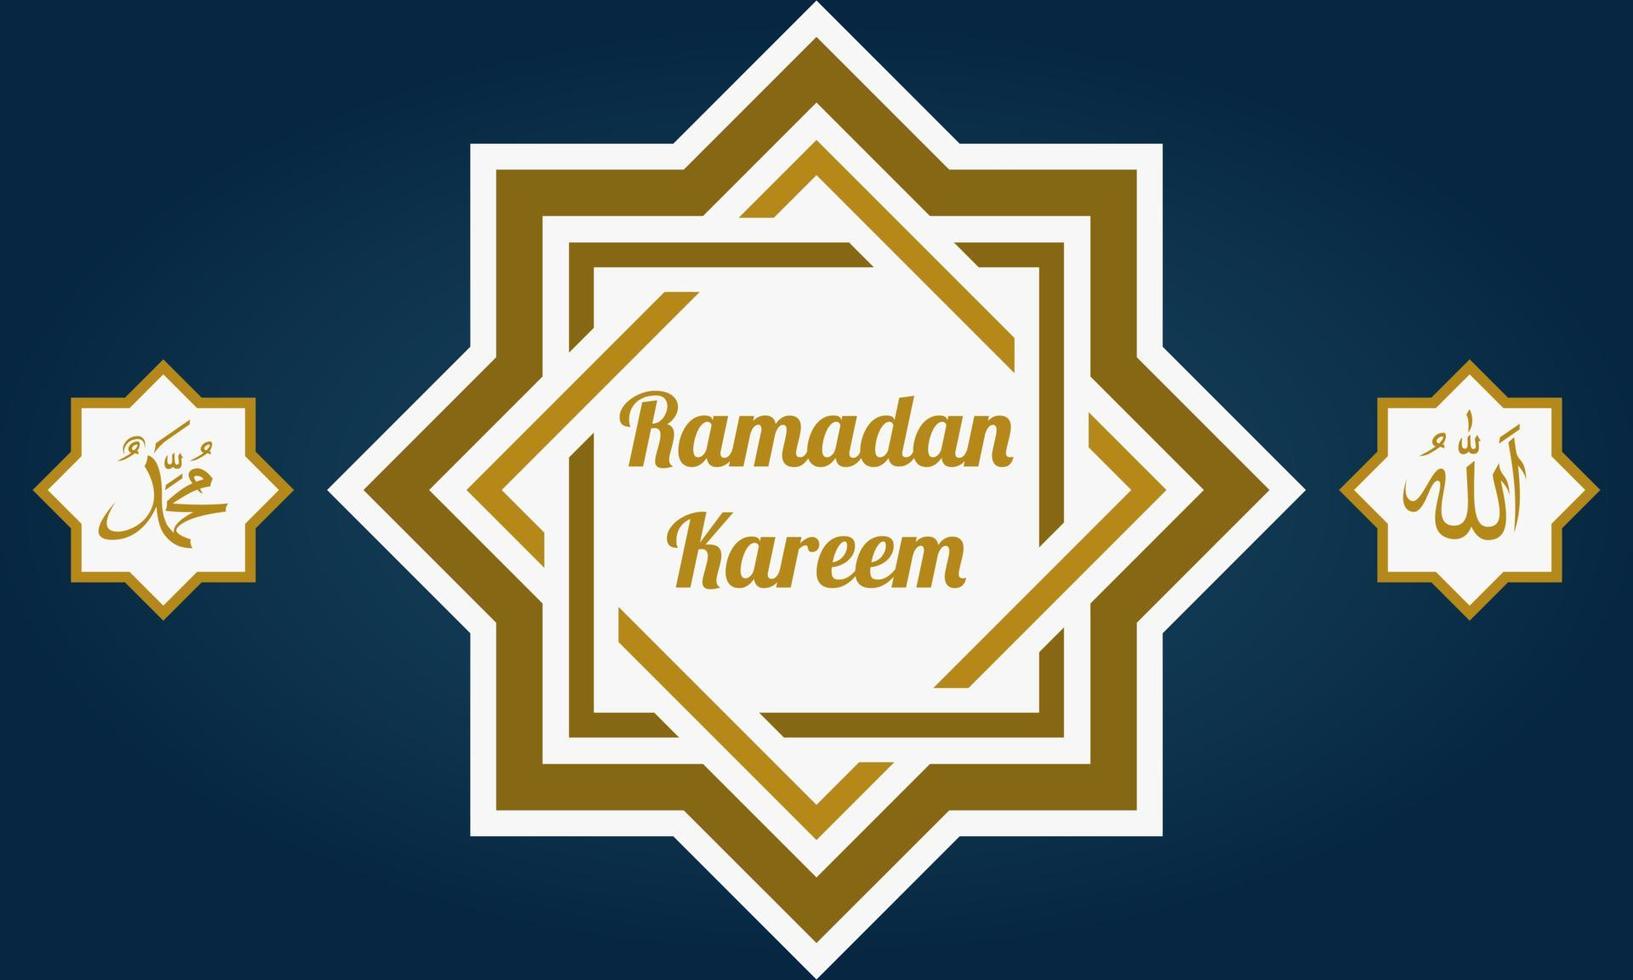 plantilla de diseño de ramadan kareem con adornos islámicos vector